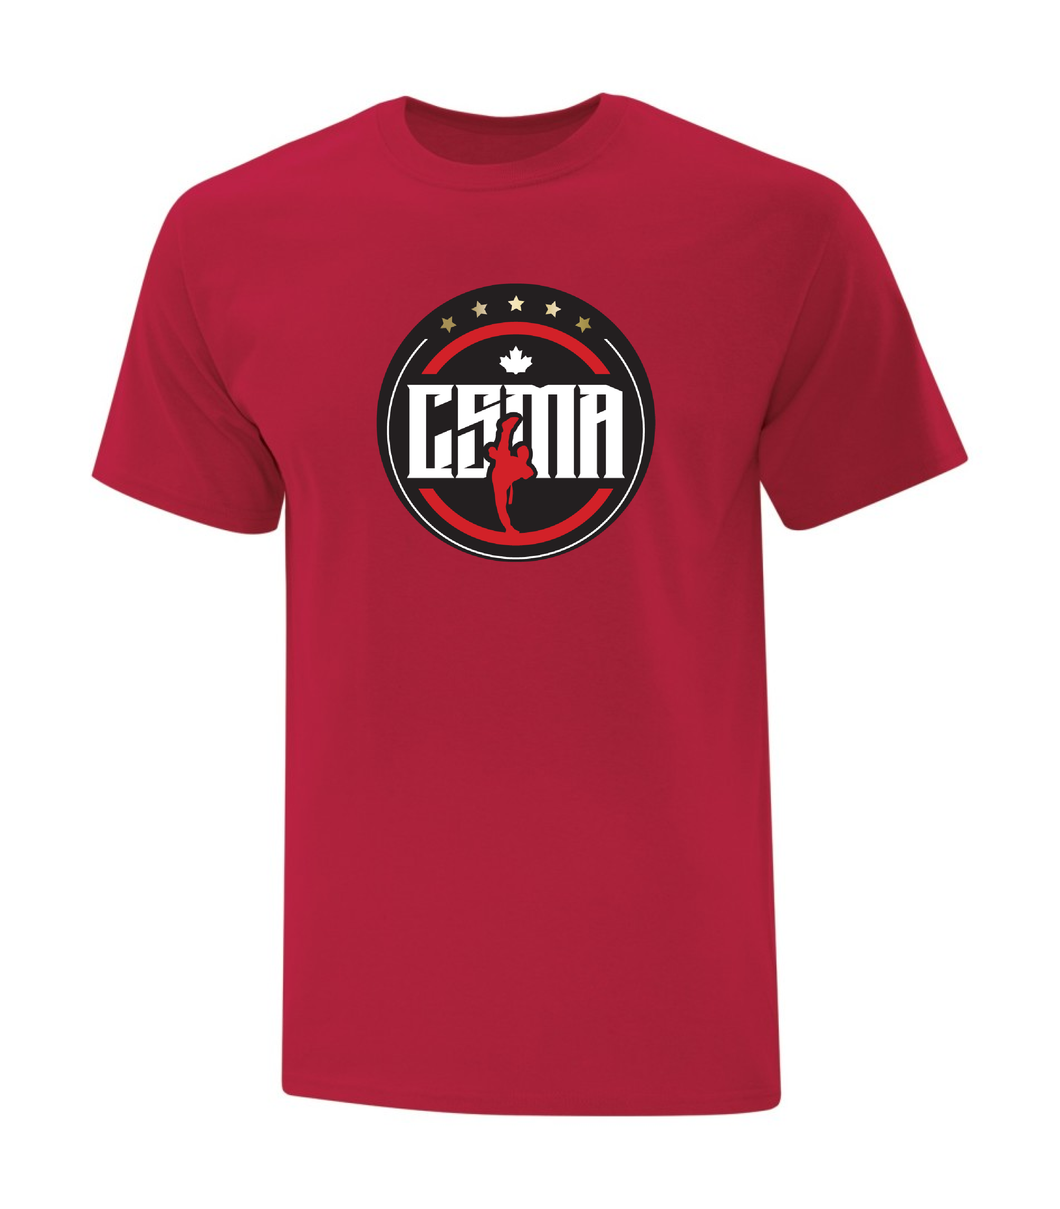 Red Men's T-Shirt - CSMA logo